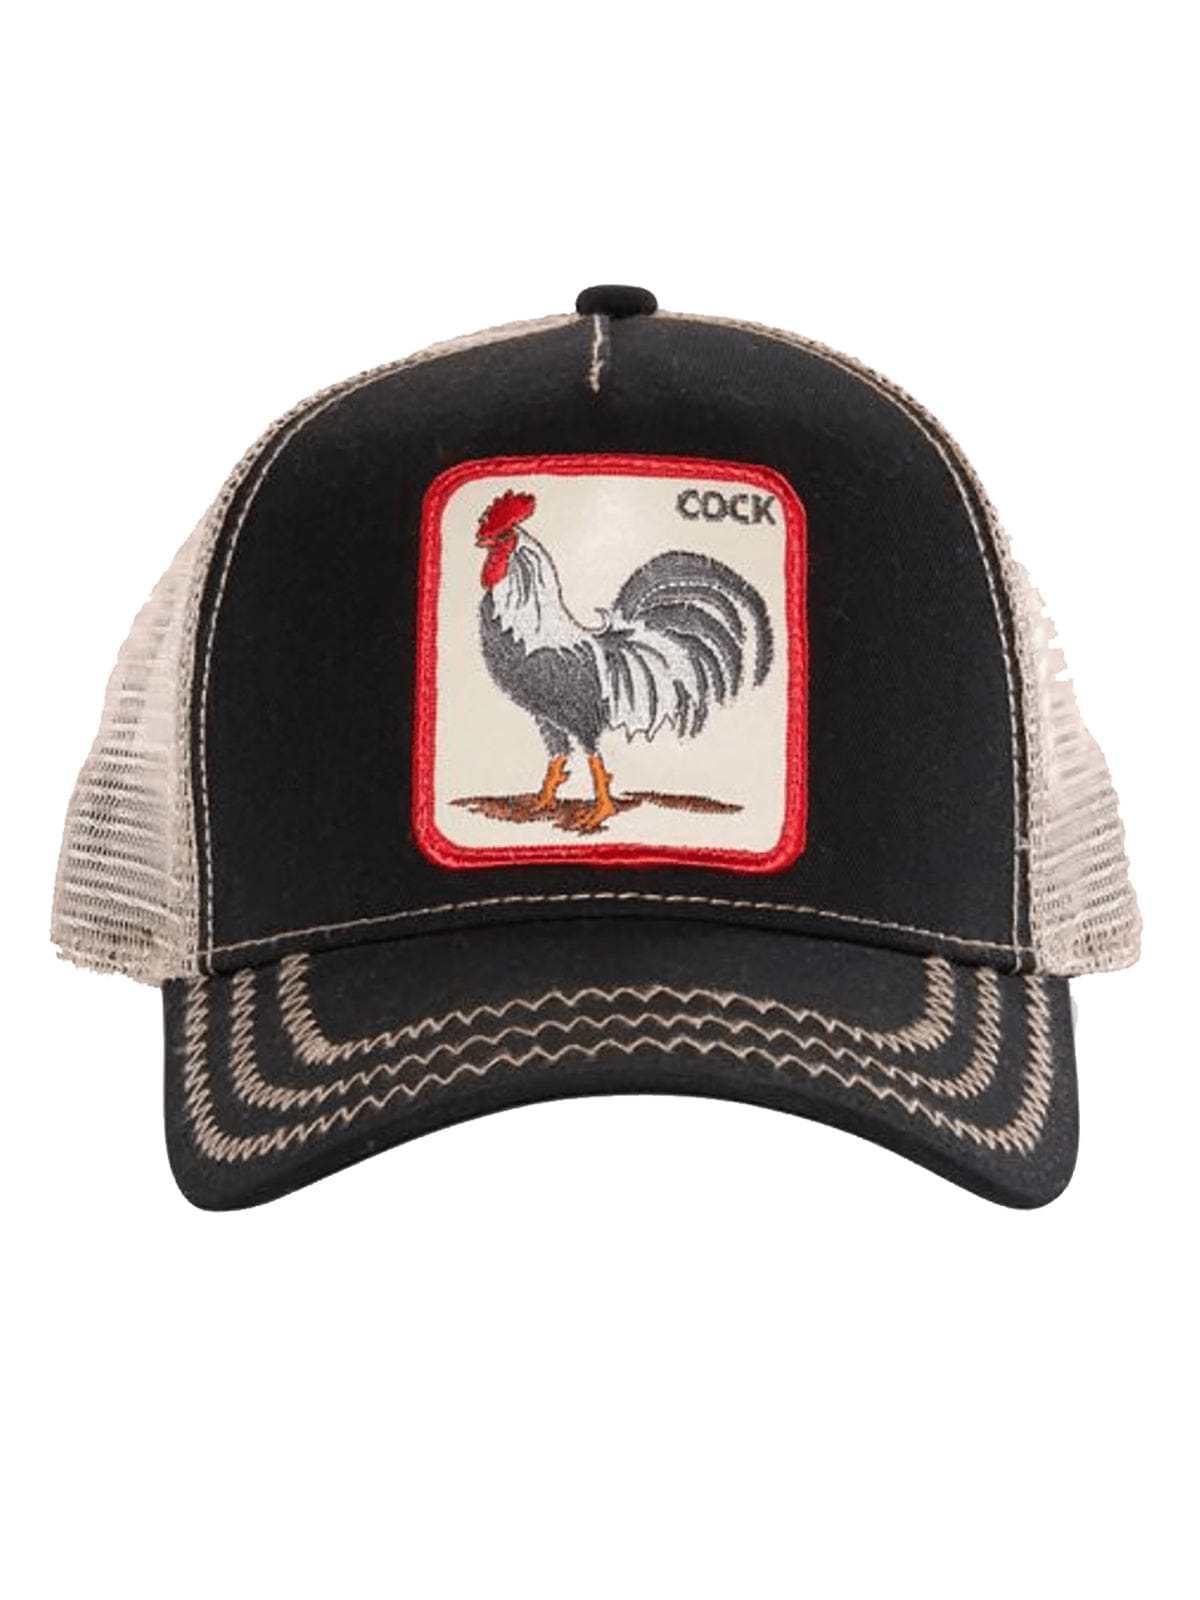 כובע מצחייה עם פא'ץ תרנגול Rooster / יוניסקס- Goorin|גורין